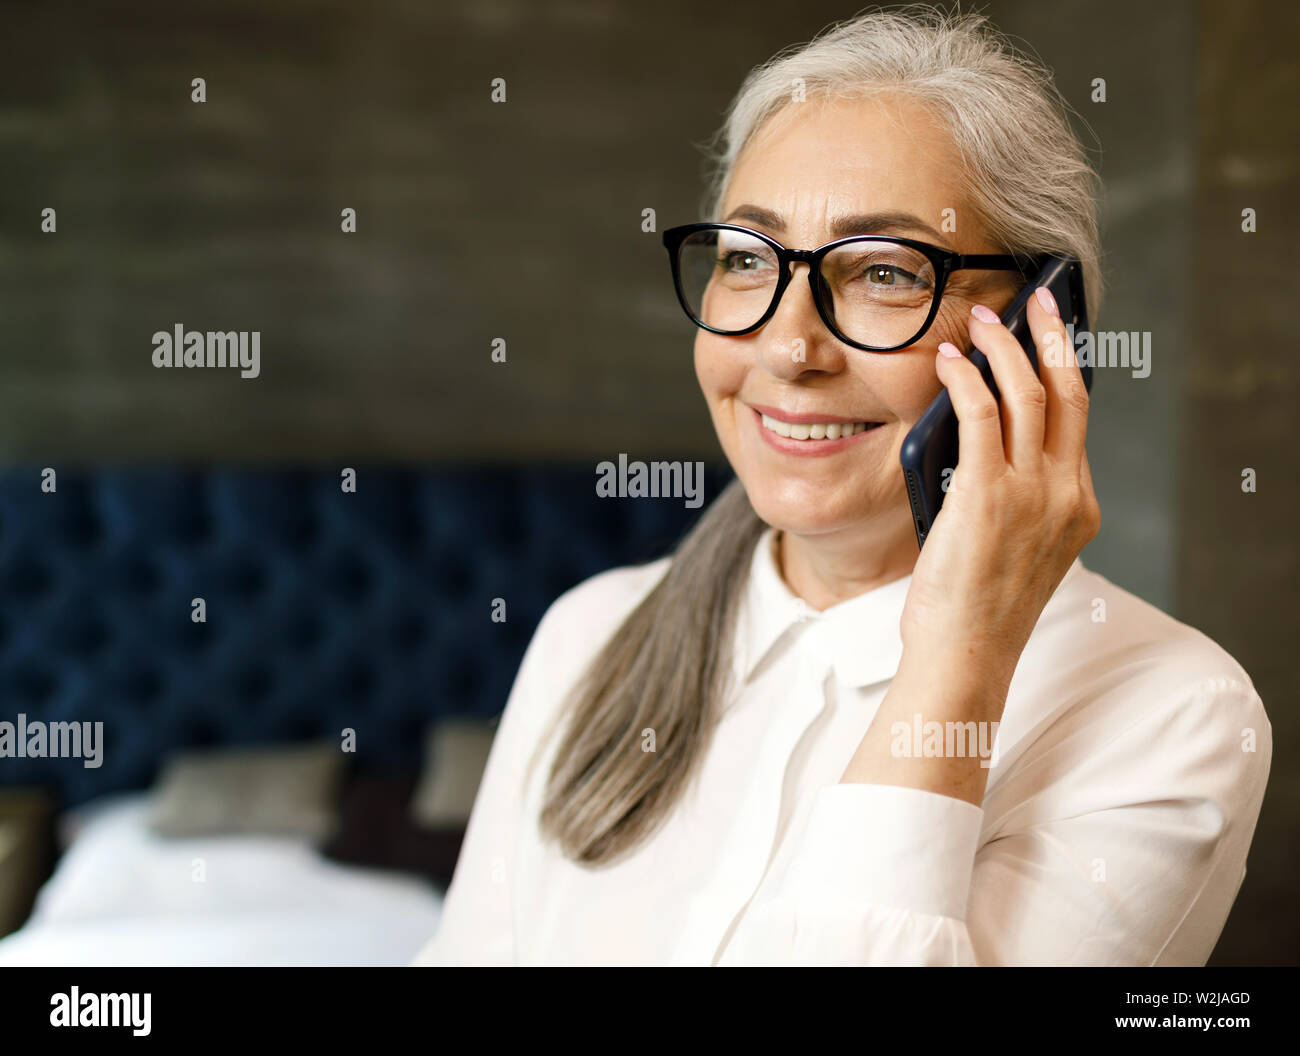 Lächelnde ältere Frau mit grauen Haaren sprechen auf dem Smartphone mit positiven Emotionen Stockfoto